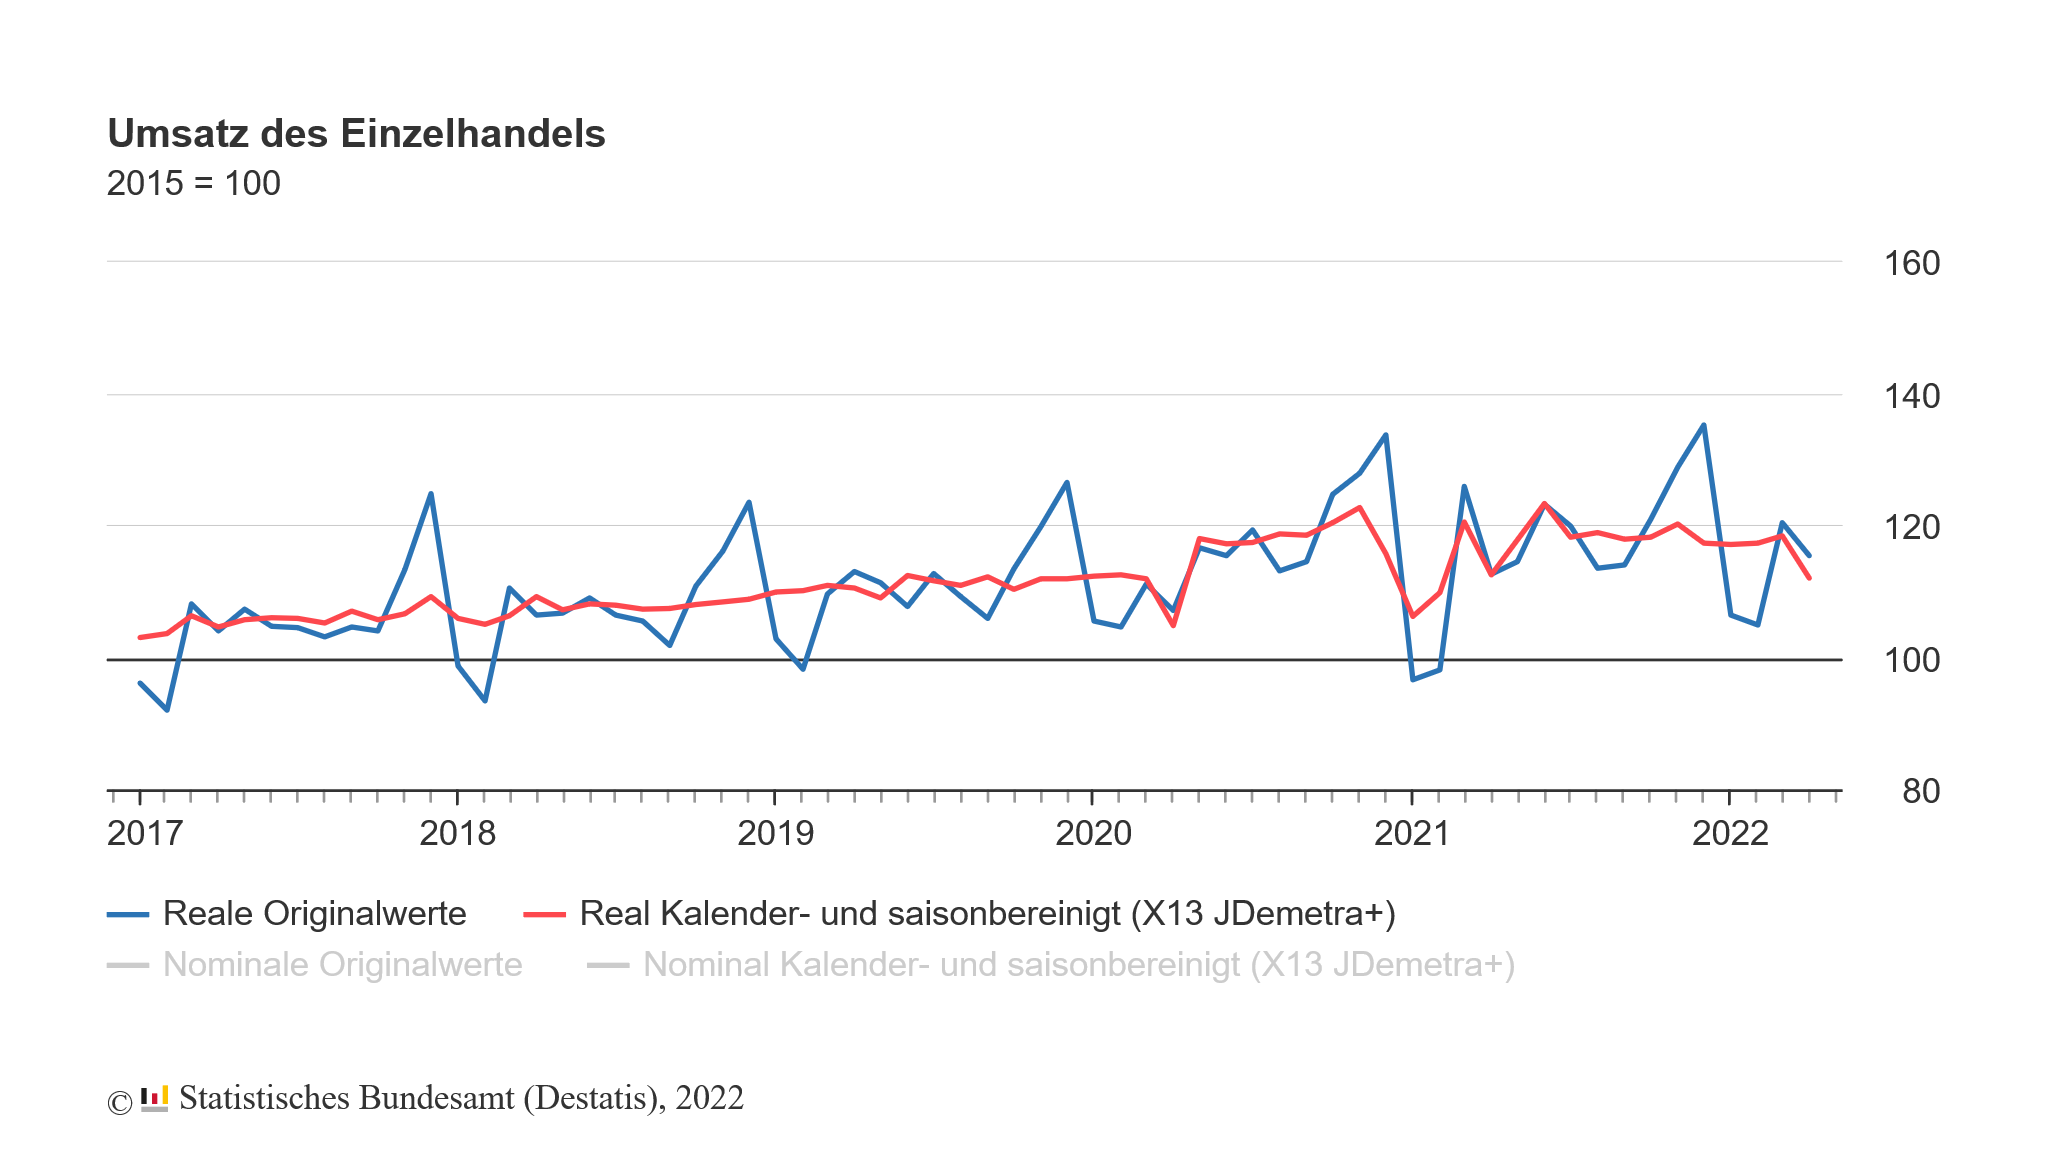 Umsatz des Einzelhandels in Deutschland